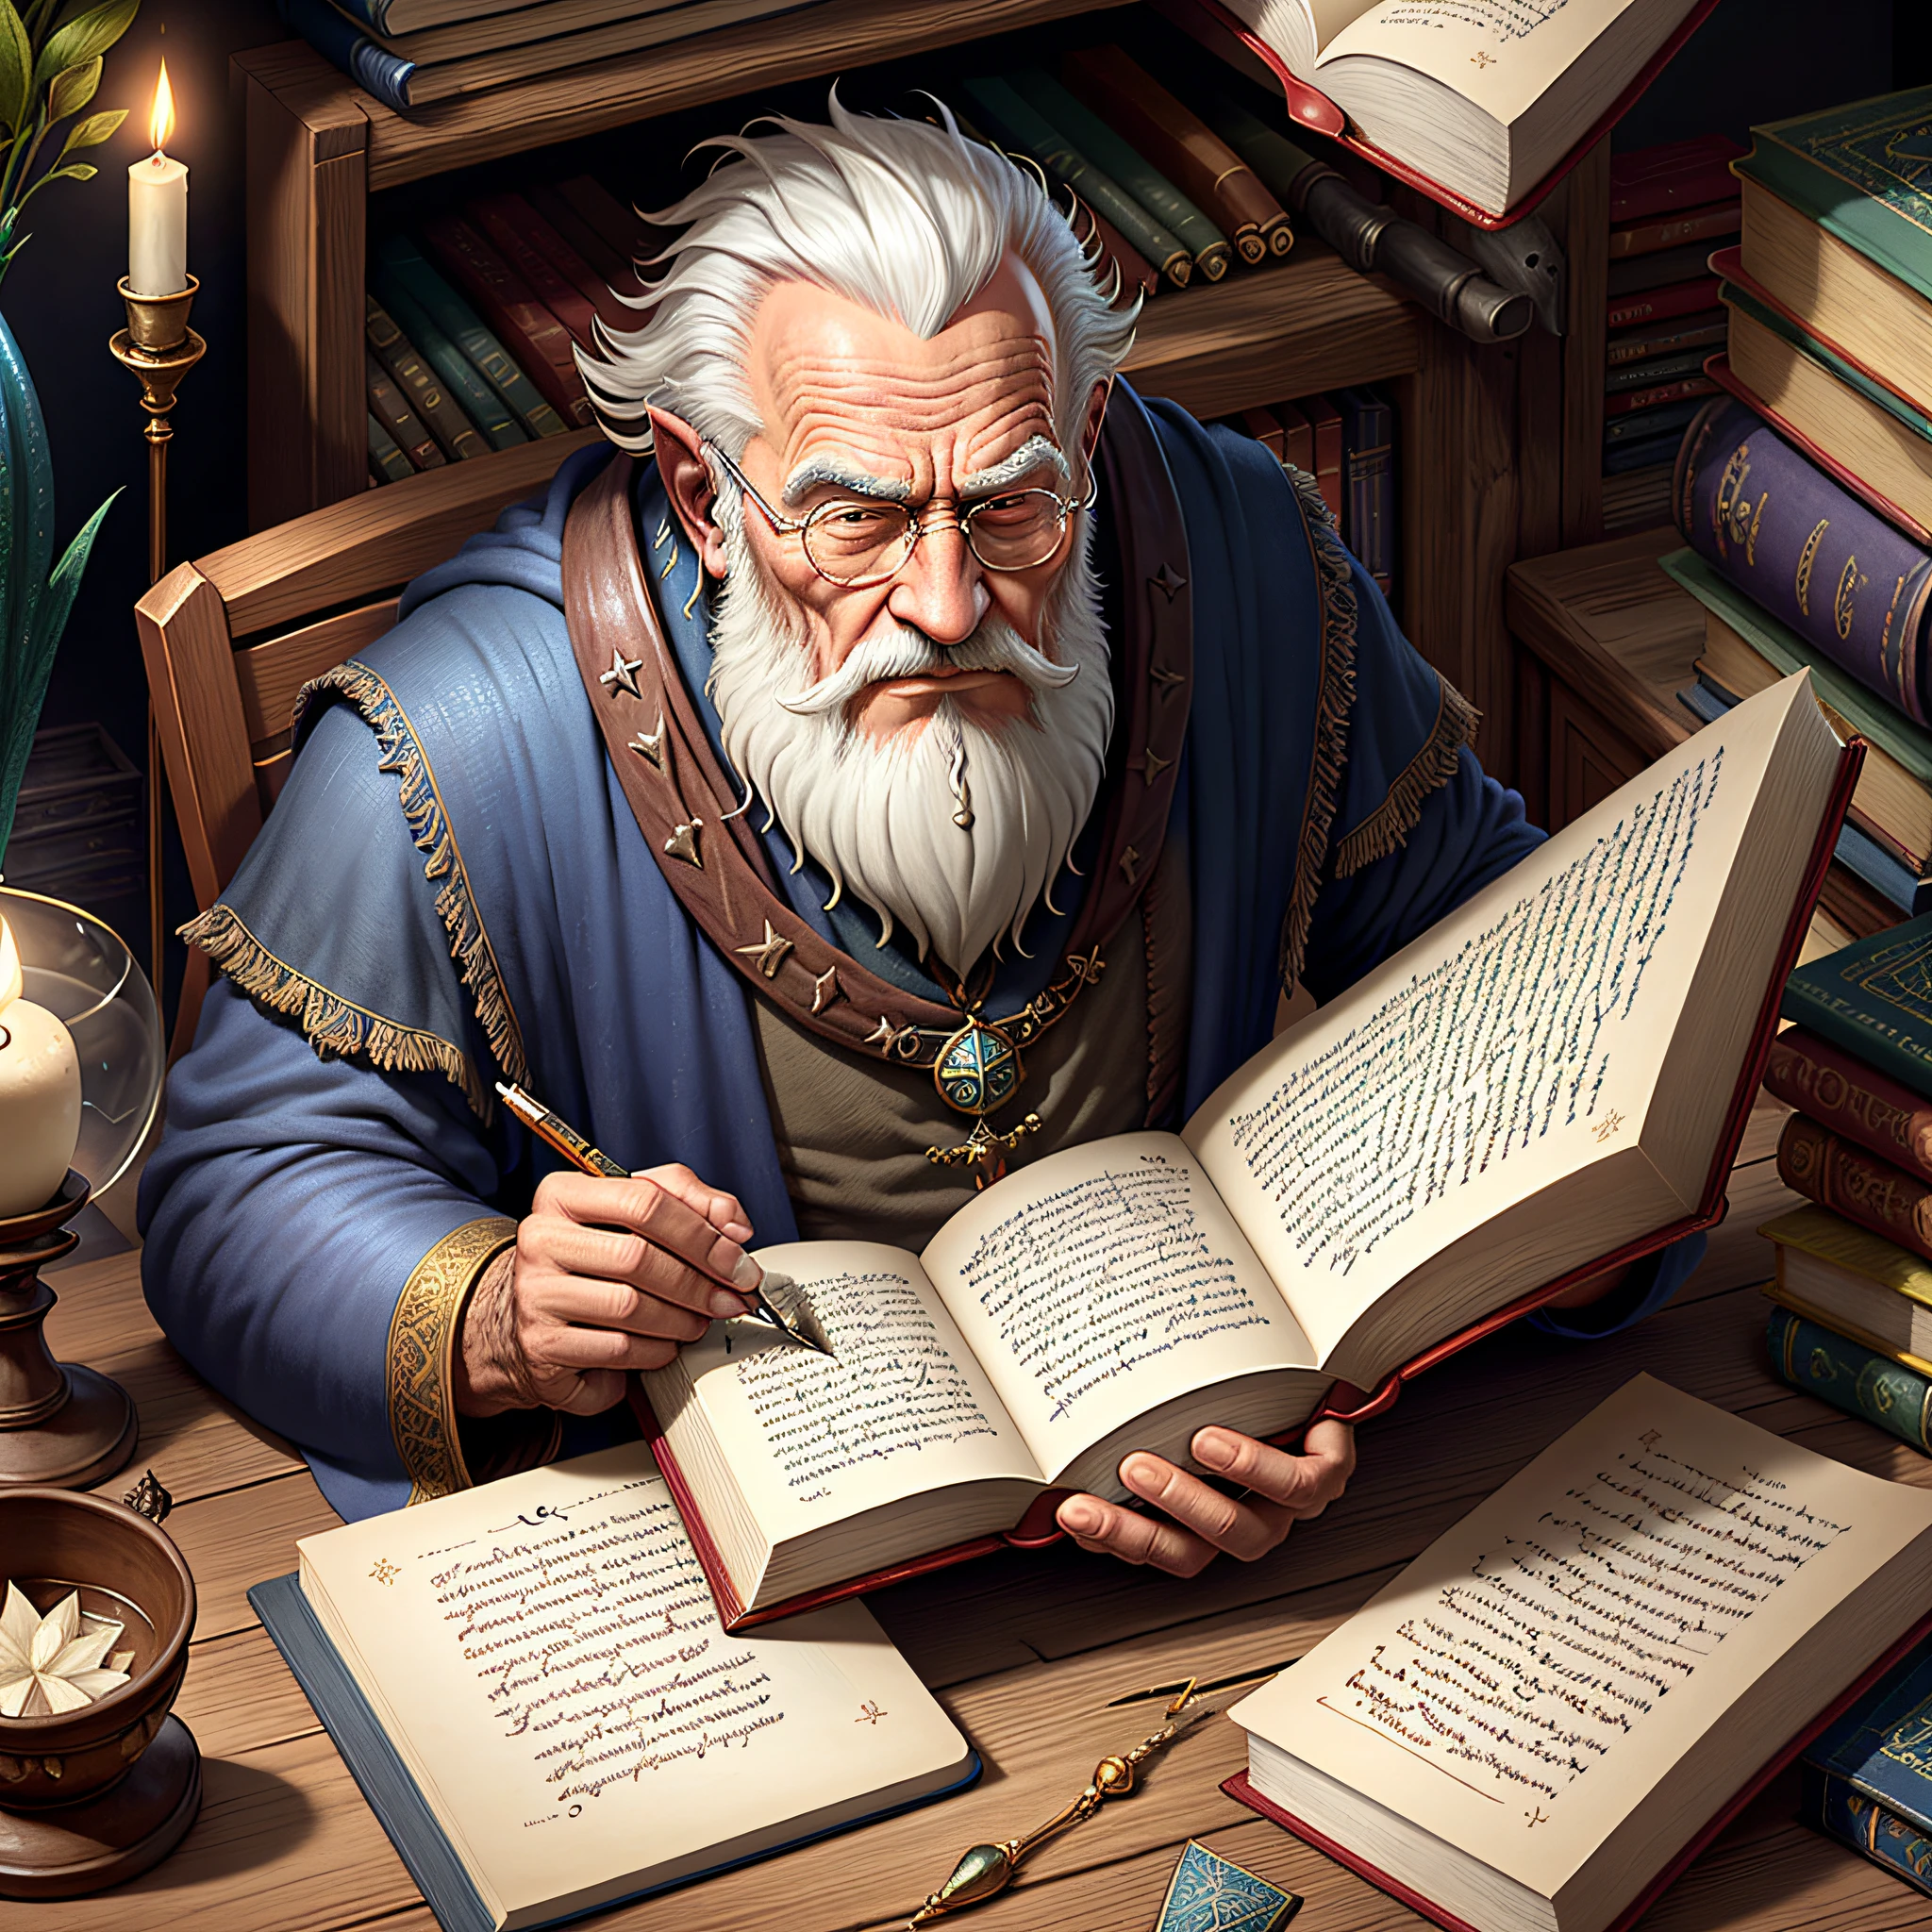 Средневековые изображения, Фантазия, старик-волшебник пишет волшебную книгу в библиотеке с множеством технологий и экстремальным реализмом,